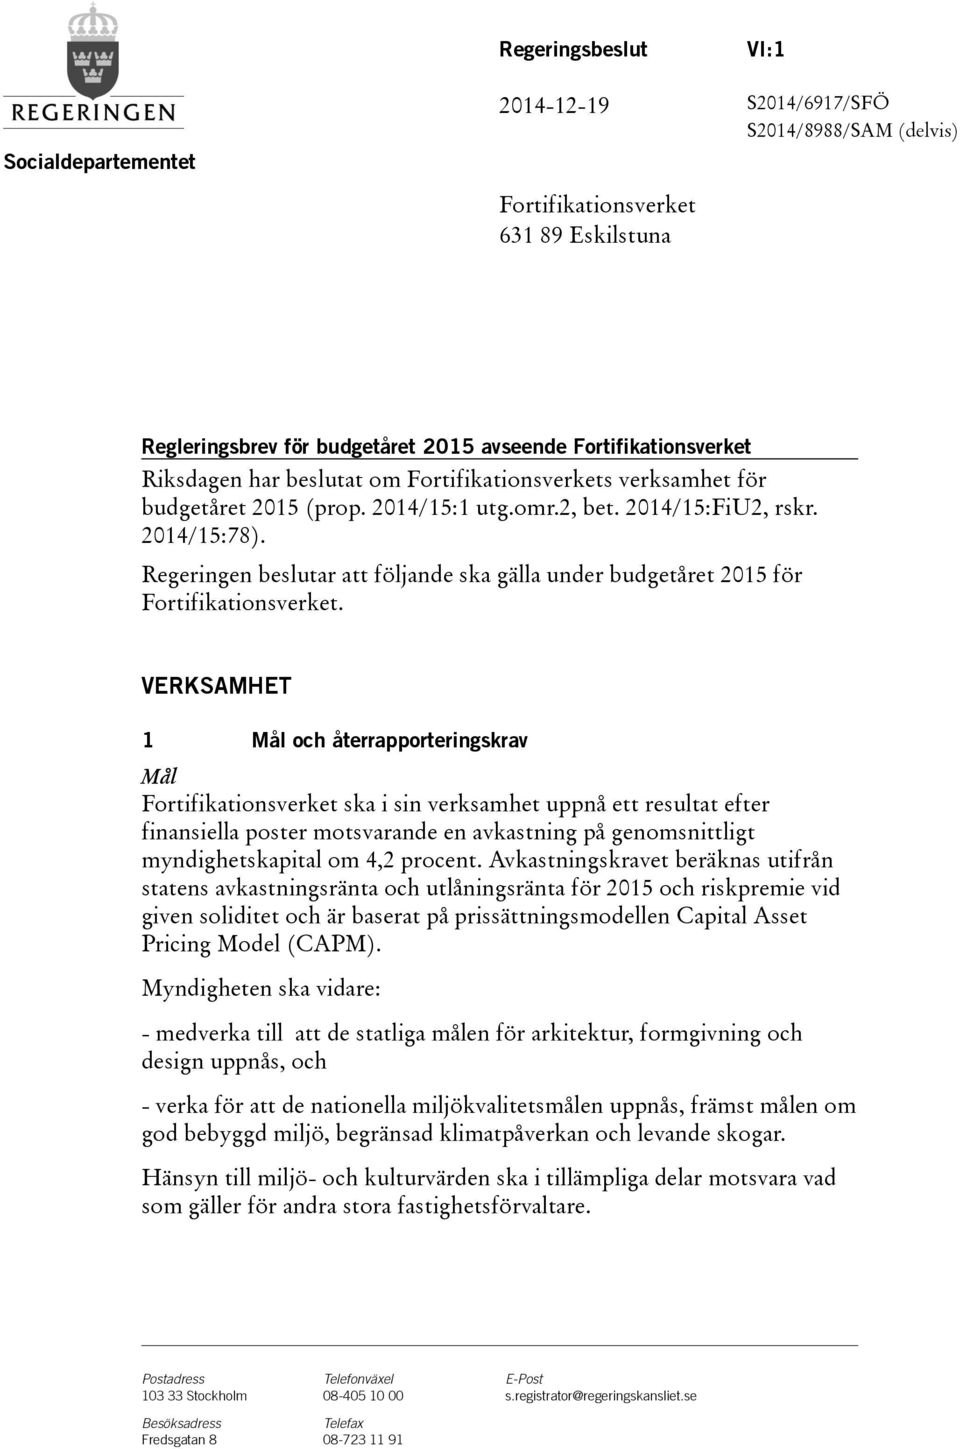 Regeringen beslutar att följande ska gälla under budgetåret 2015 för Fortifikationsverket.